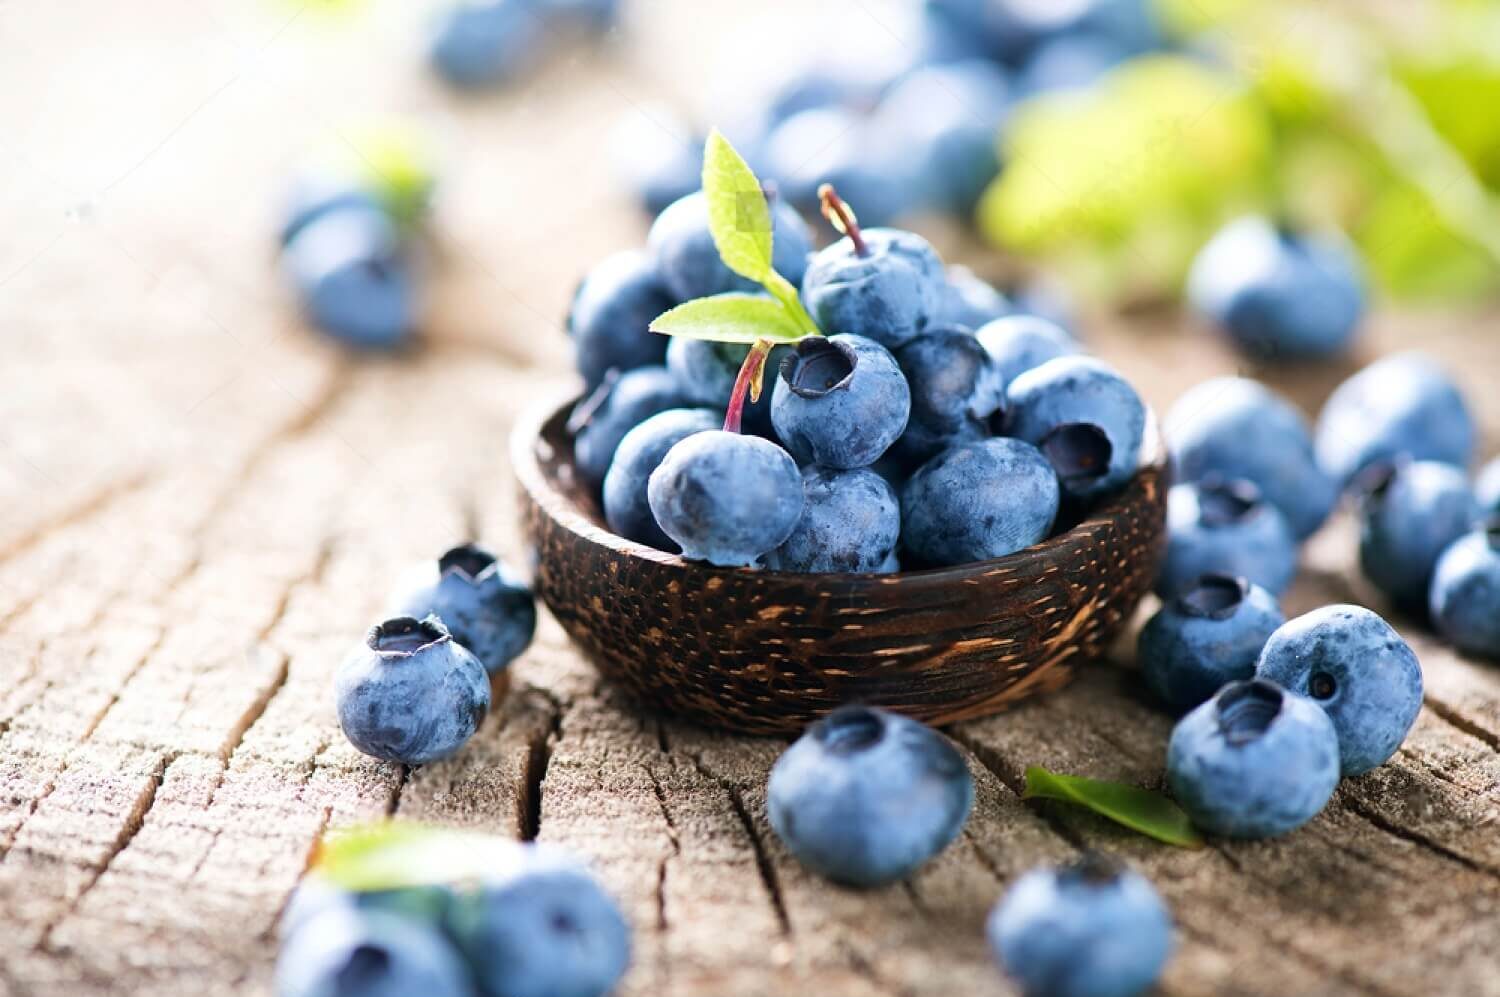 Do Blueberries Go Bad